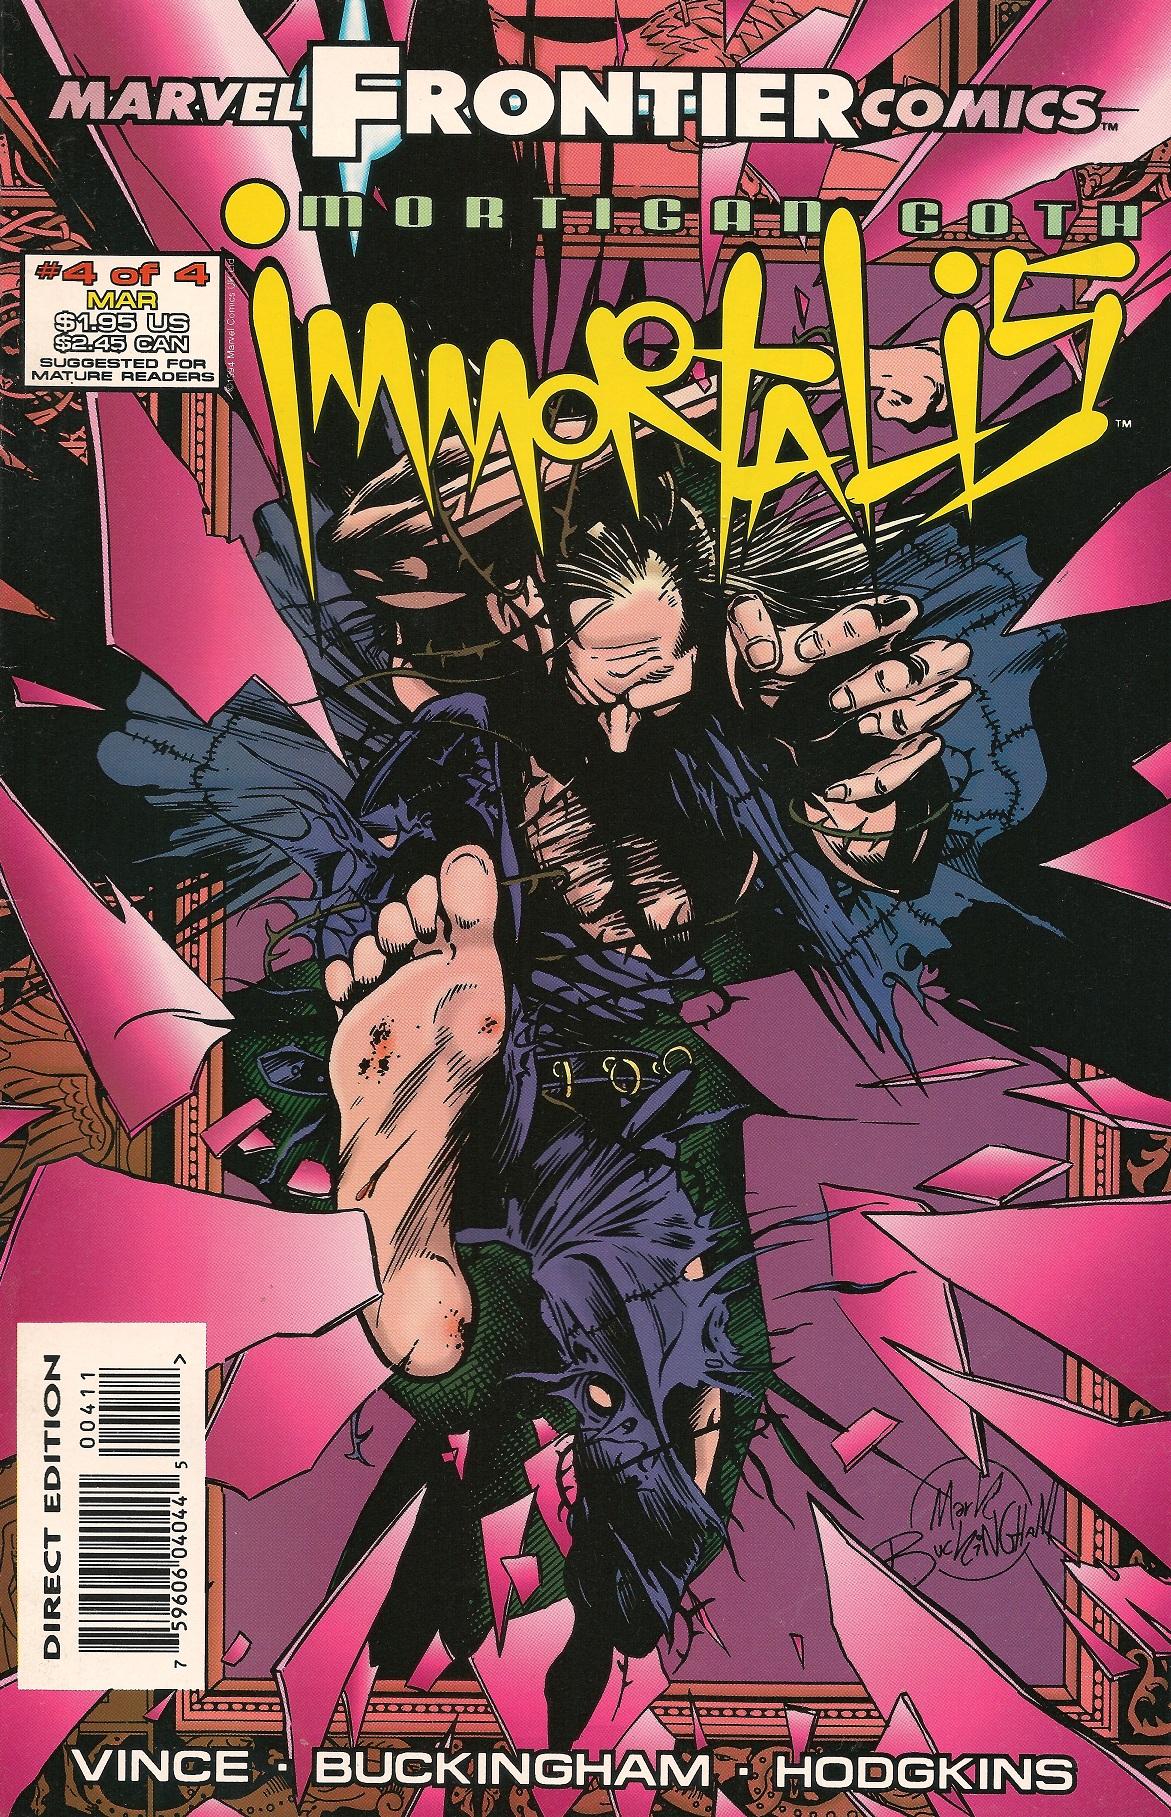 Mortigan Goth: Immortalis Vol. 1 #4